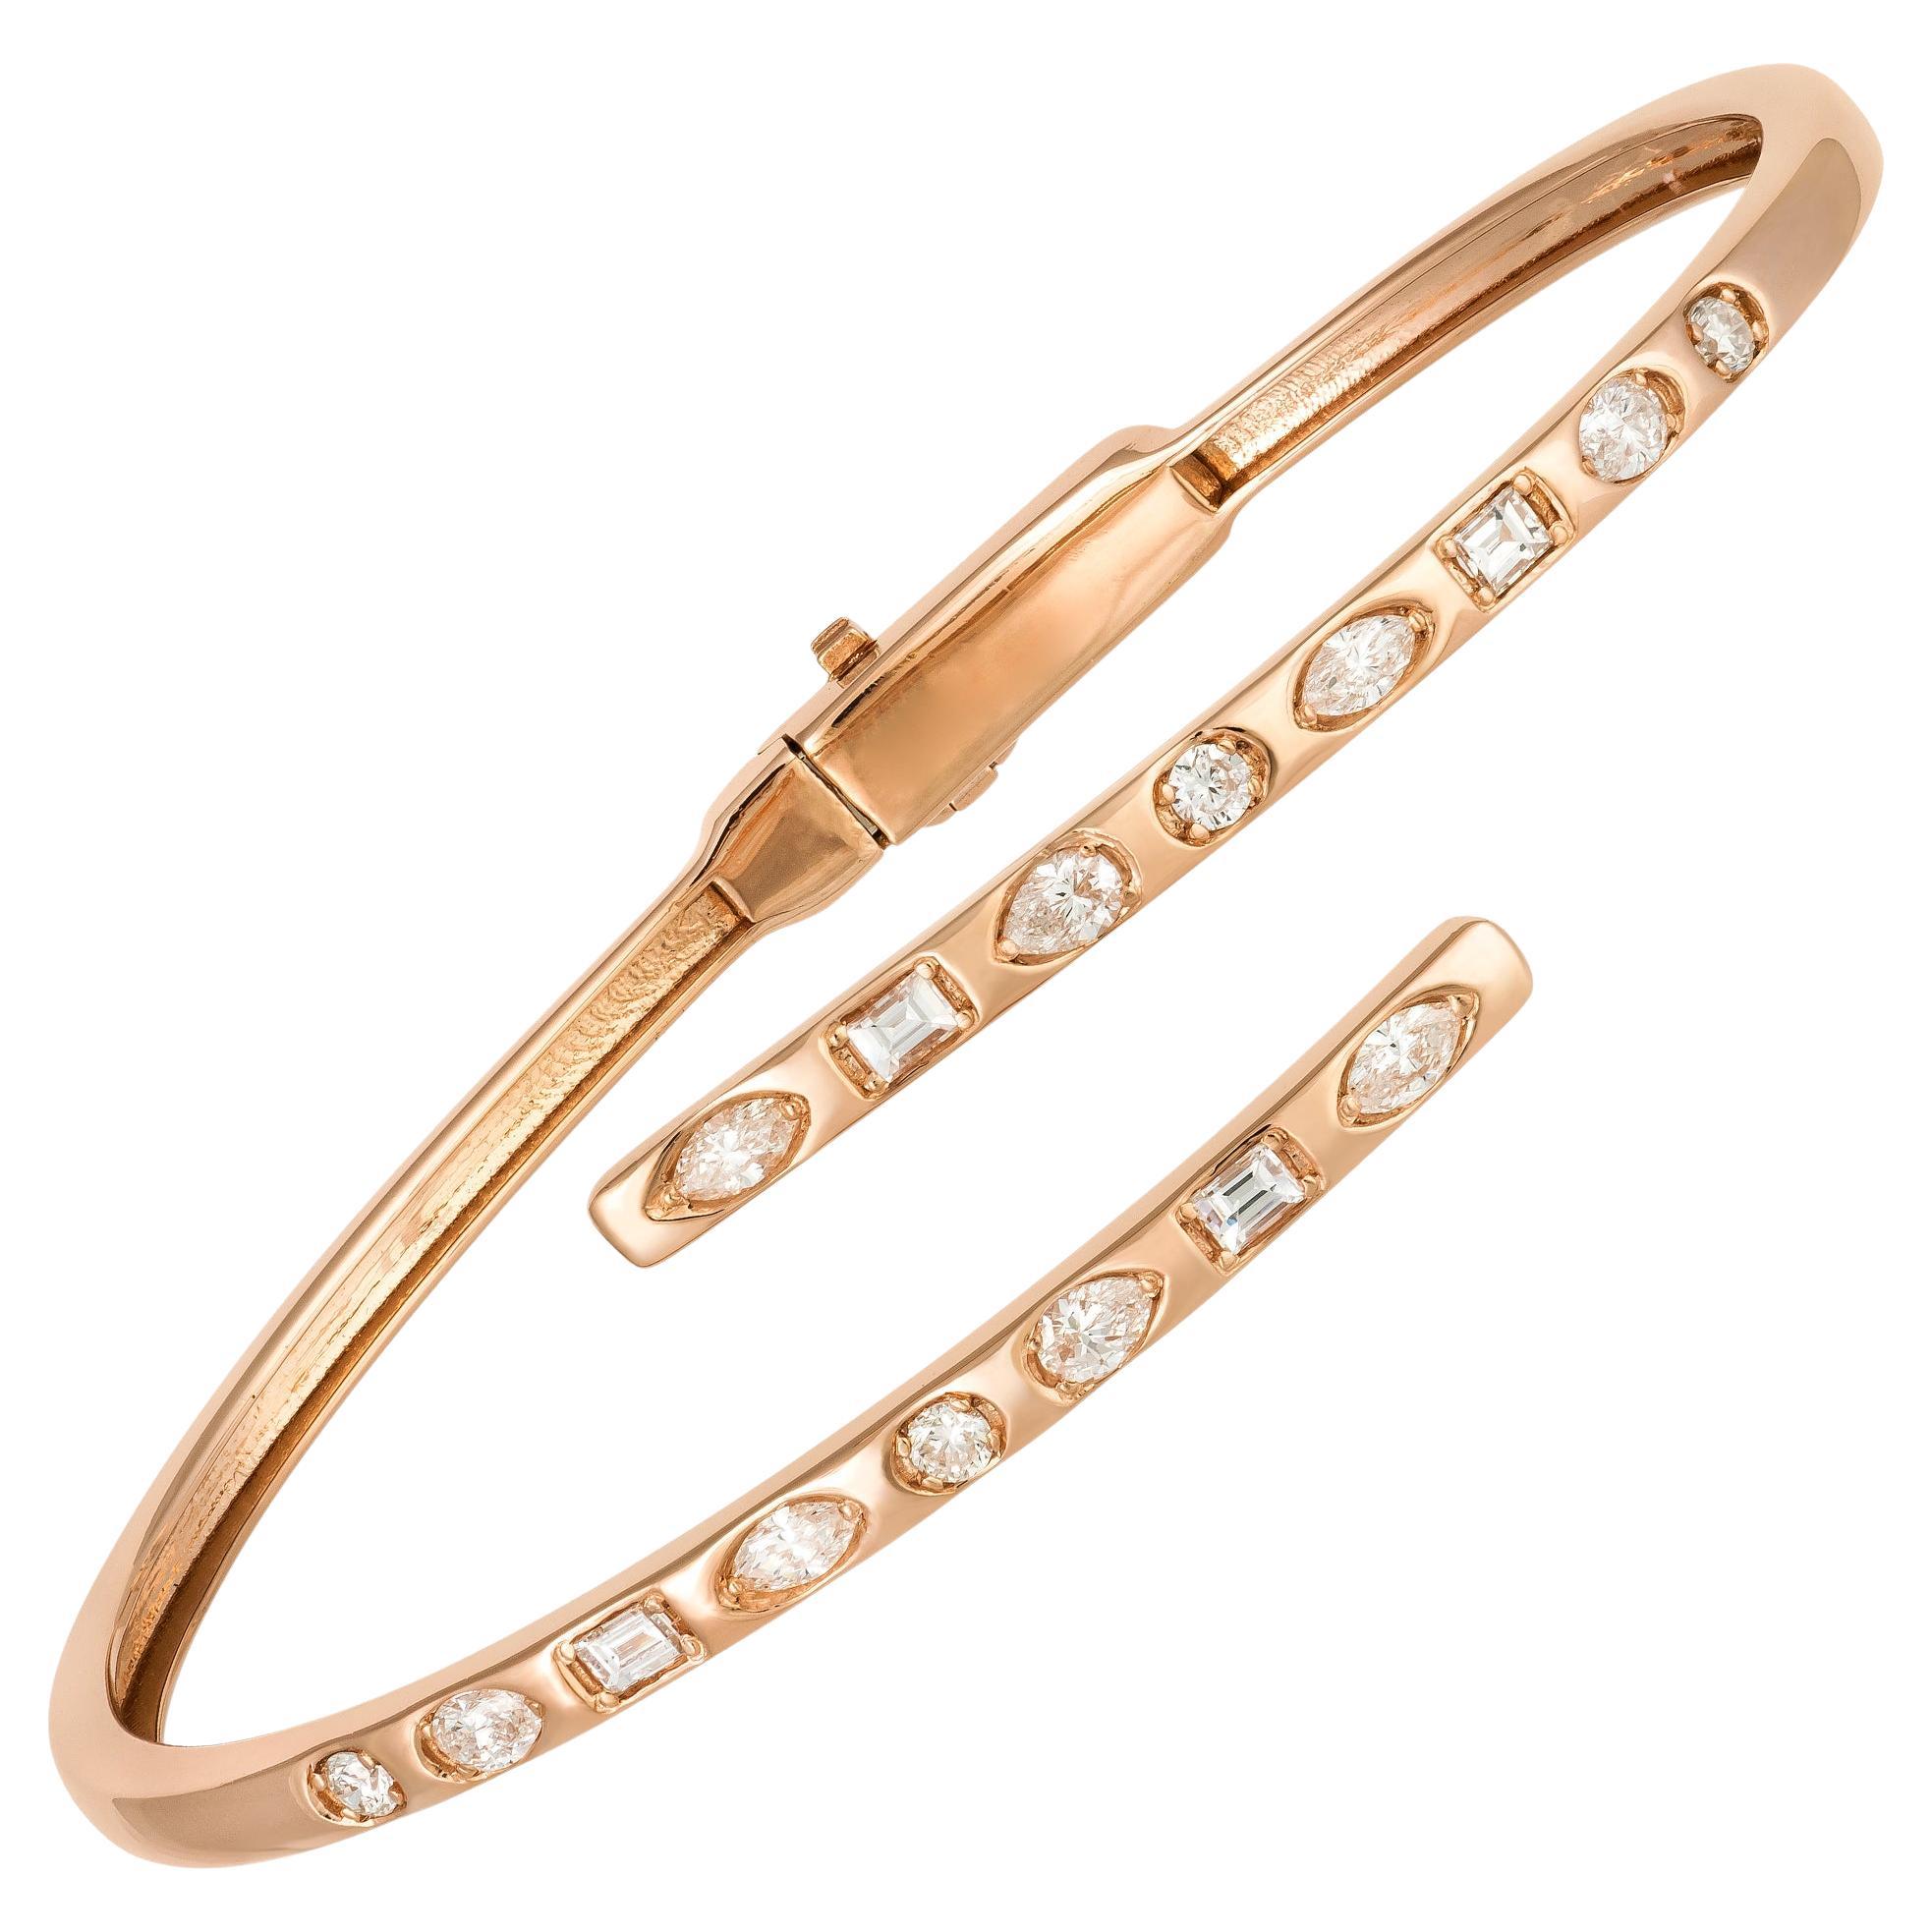 Modern Pink Gold 18K Bracelet Diamond for Her